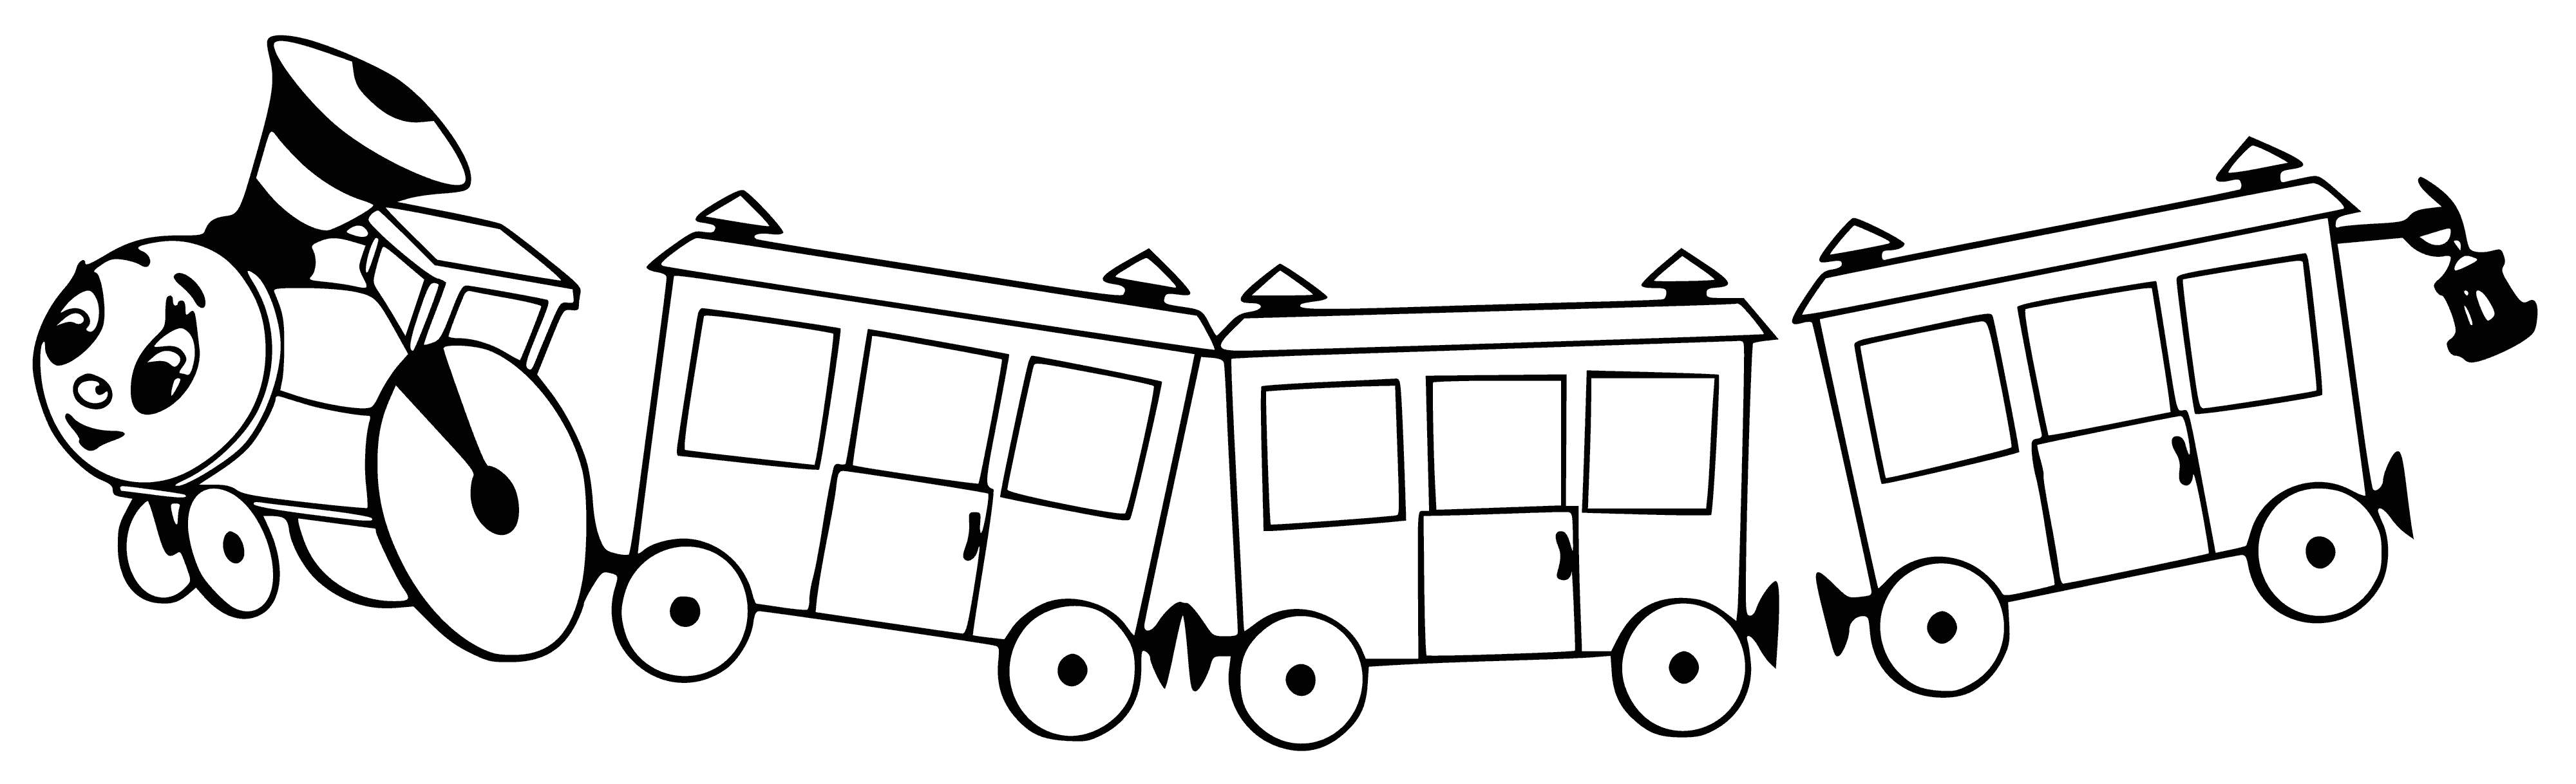 Паровозик из Ромашково с вагонами раскраска